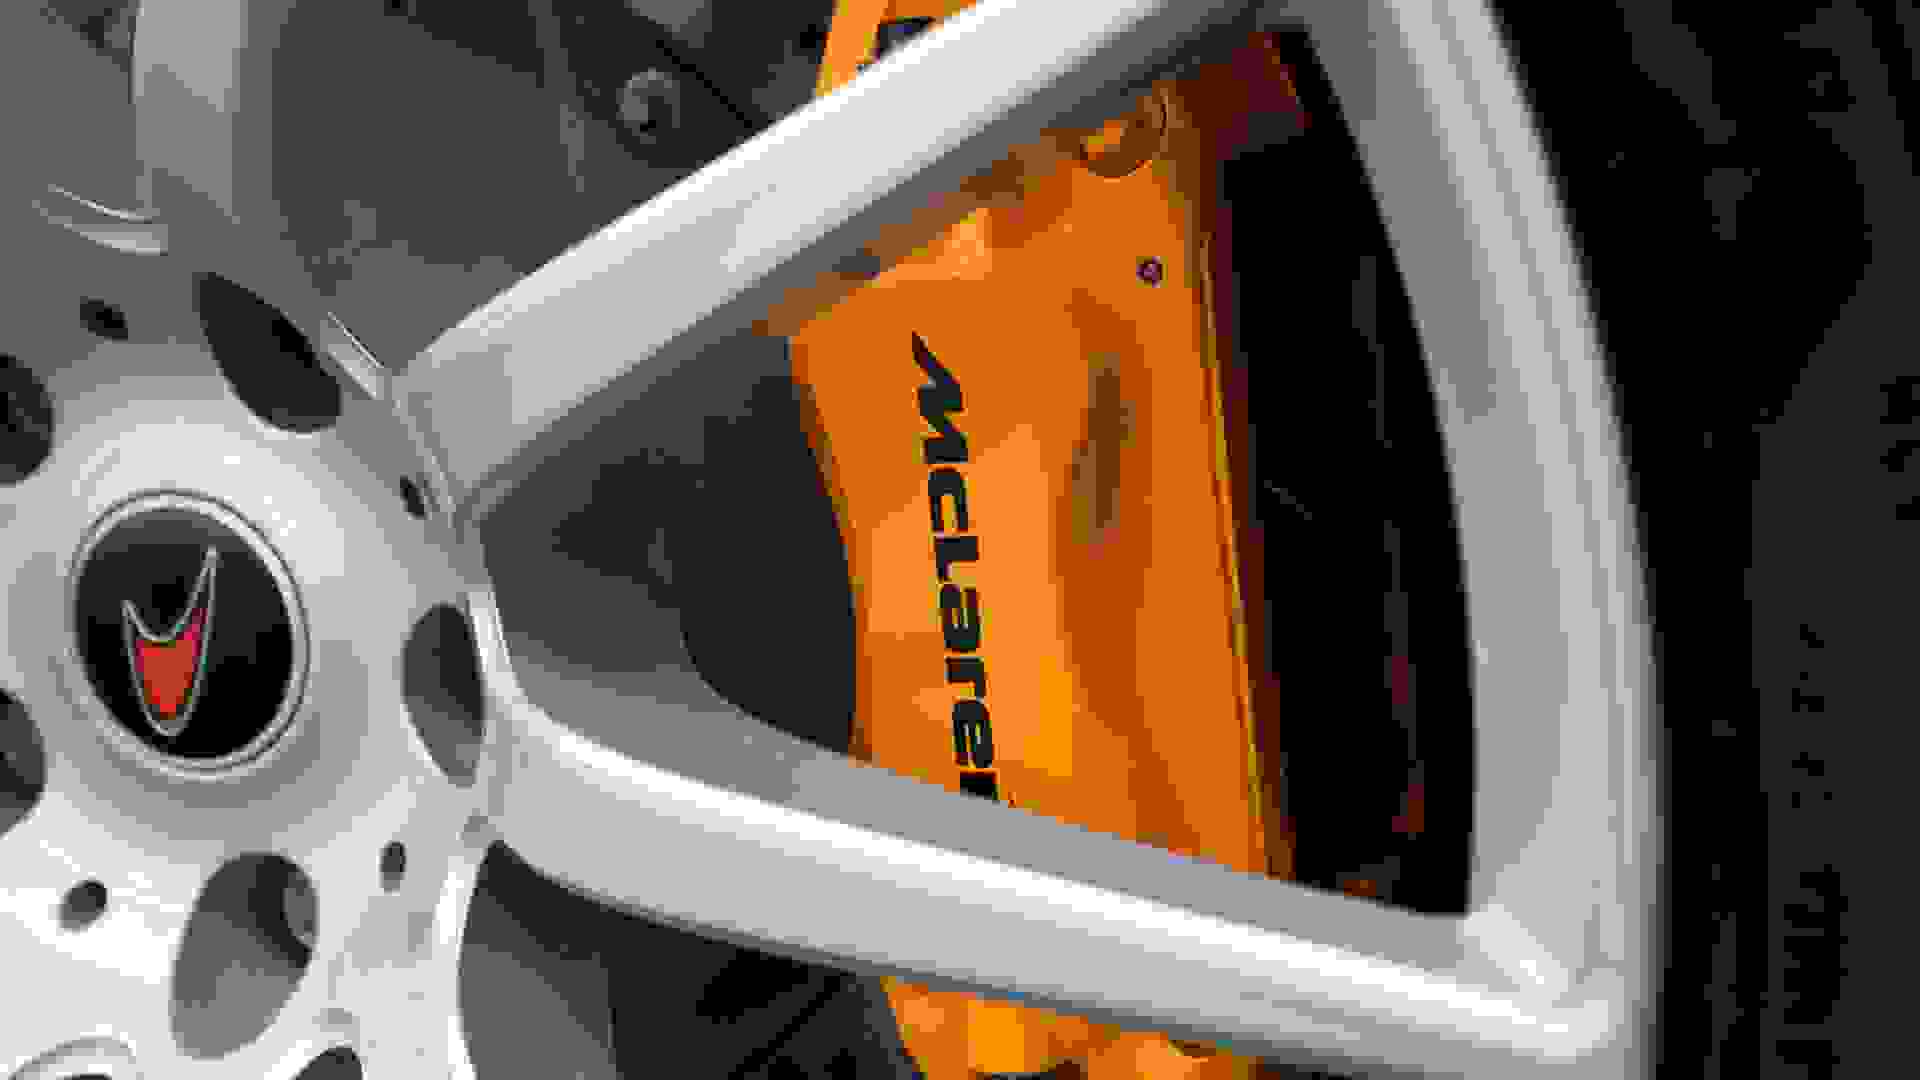 McLaren MP4-12C Photo 5076cd76-b7a8-4170-b58c-5e9db6af855f.jpg